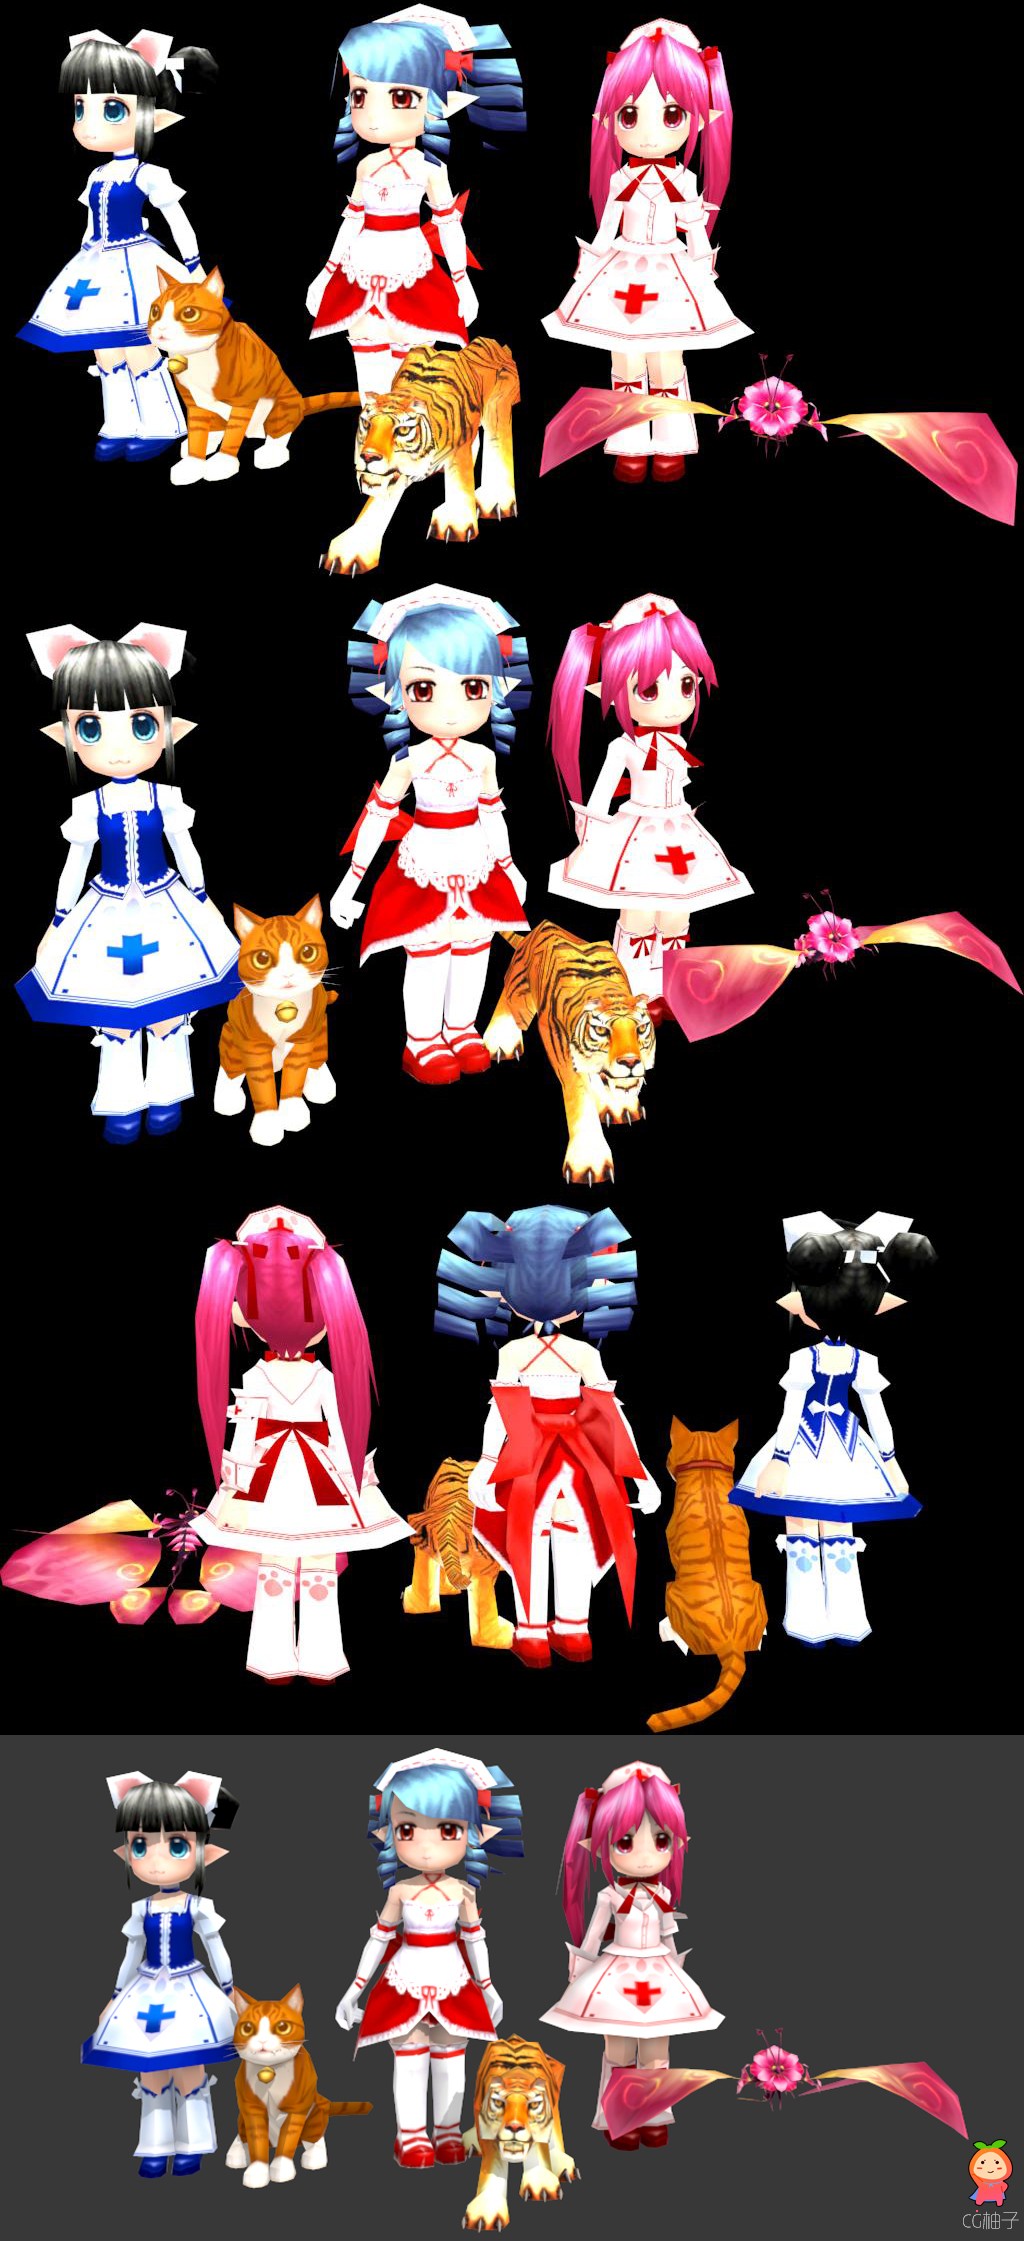 卡通女孩3D模型,三个Q版小萝莉有宠物3D角色模型,3dmax资源